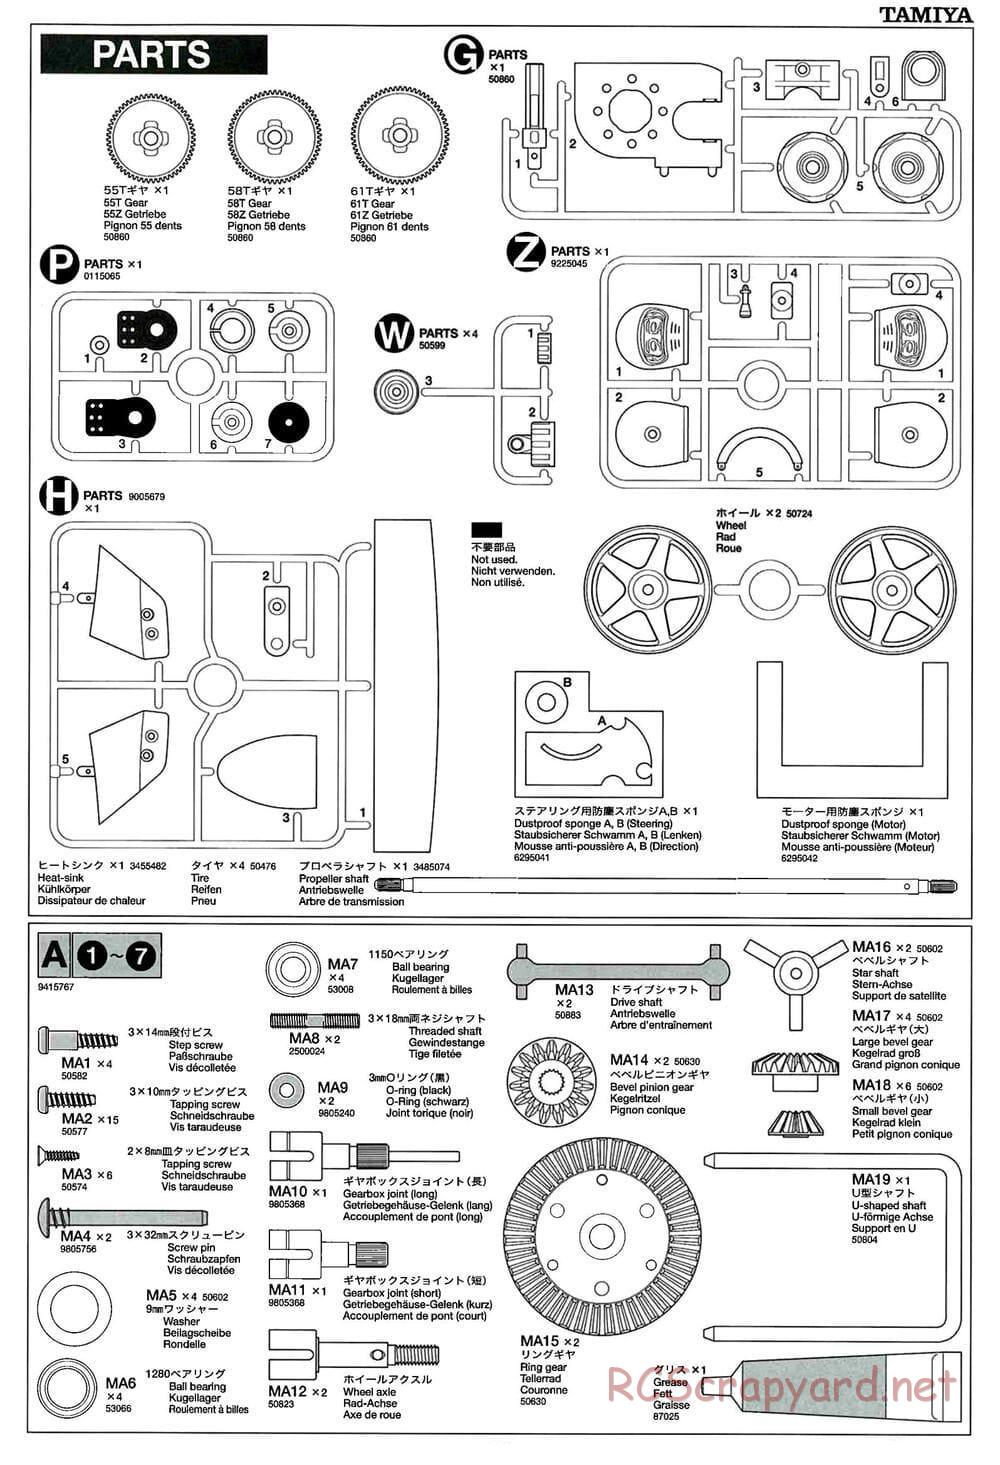 Tamiya - TB-01 Chassis - Manual - Page 17